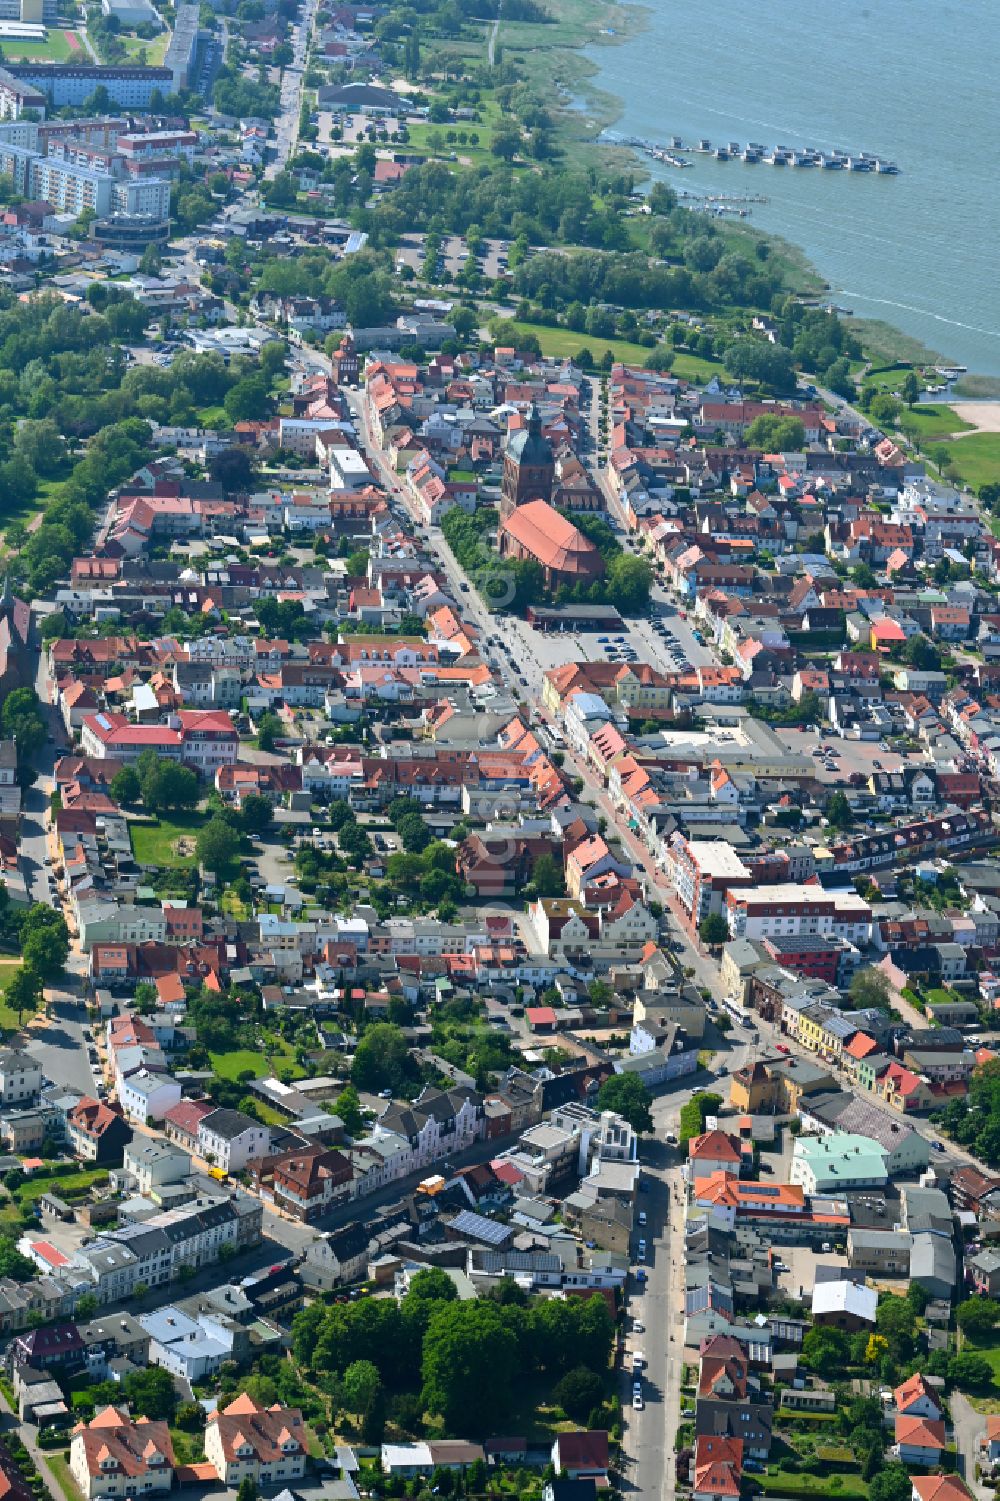 Ribnitz von oben - Altstadtbereich und Innenstadtzentrum in Ribnitz im Bundesland Mecklenburg-Vorpommern, Deutschland